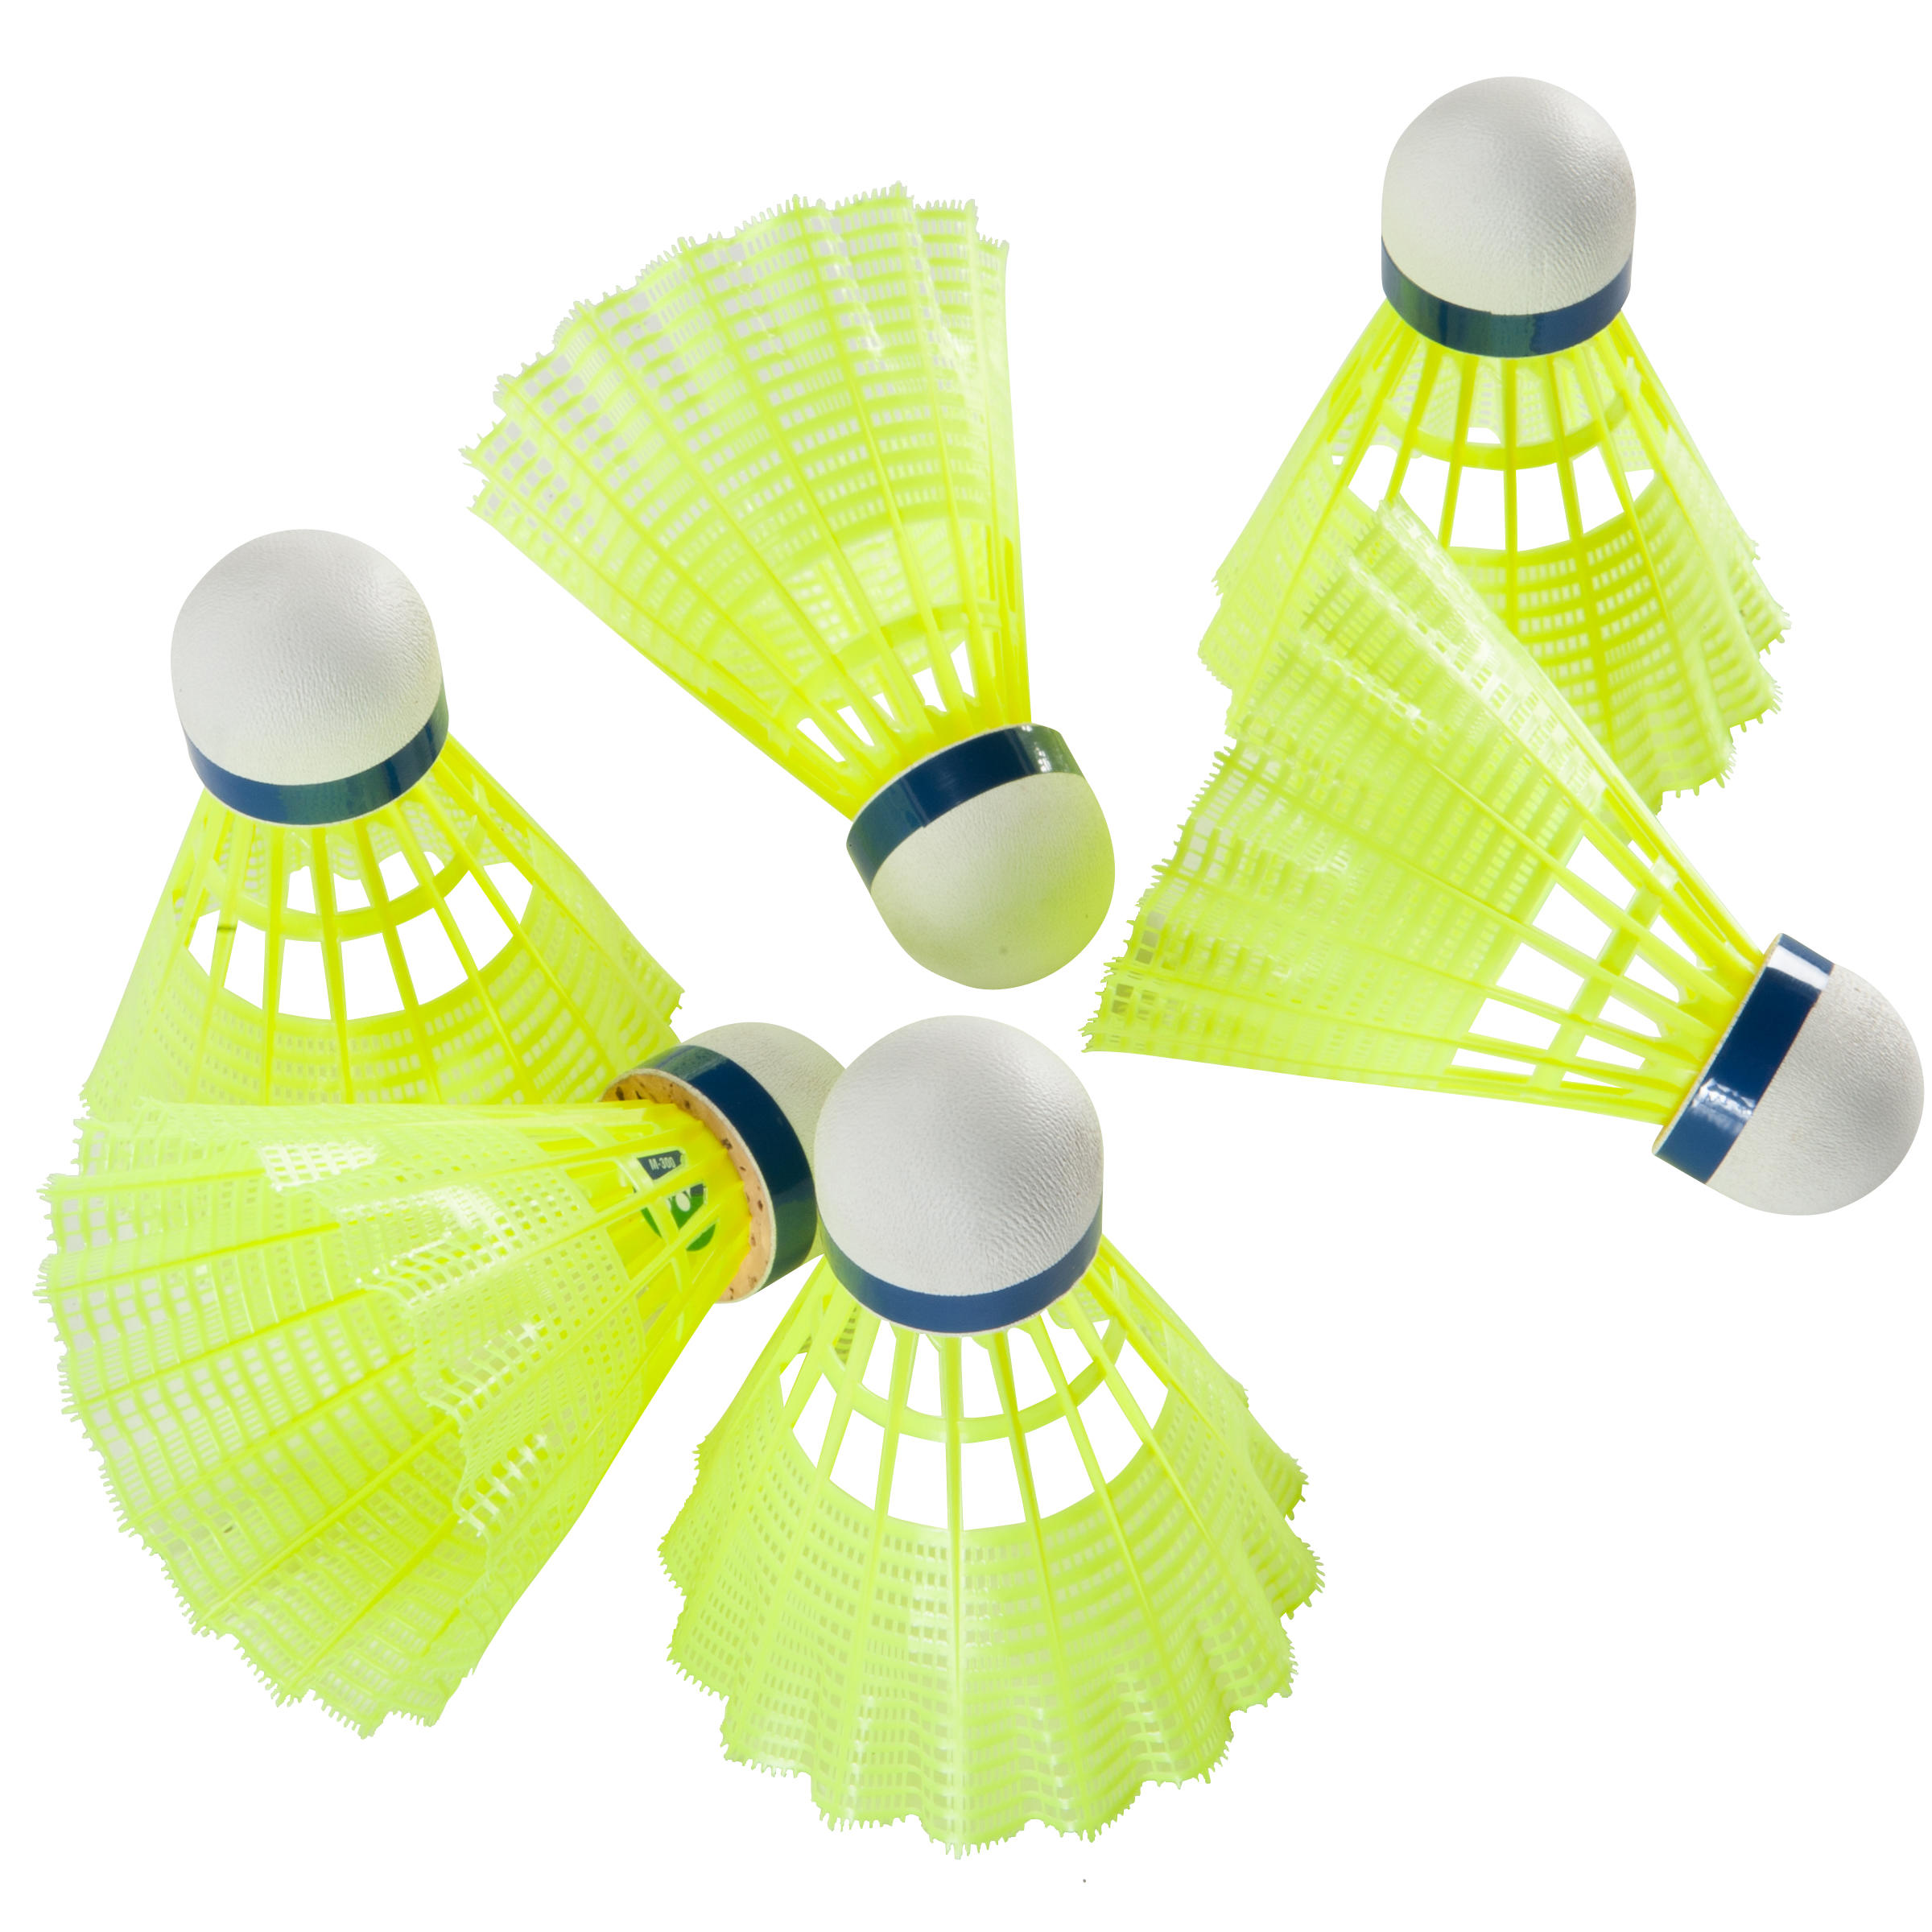 Badminton Plastic Shuttlecocks Mavis 300 6-Pack - Yellow 7/8